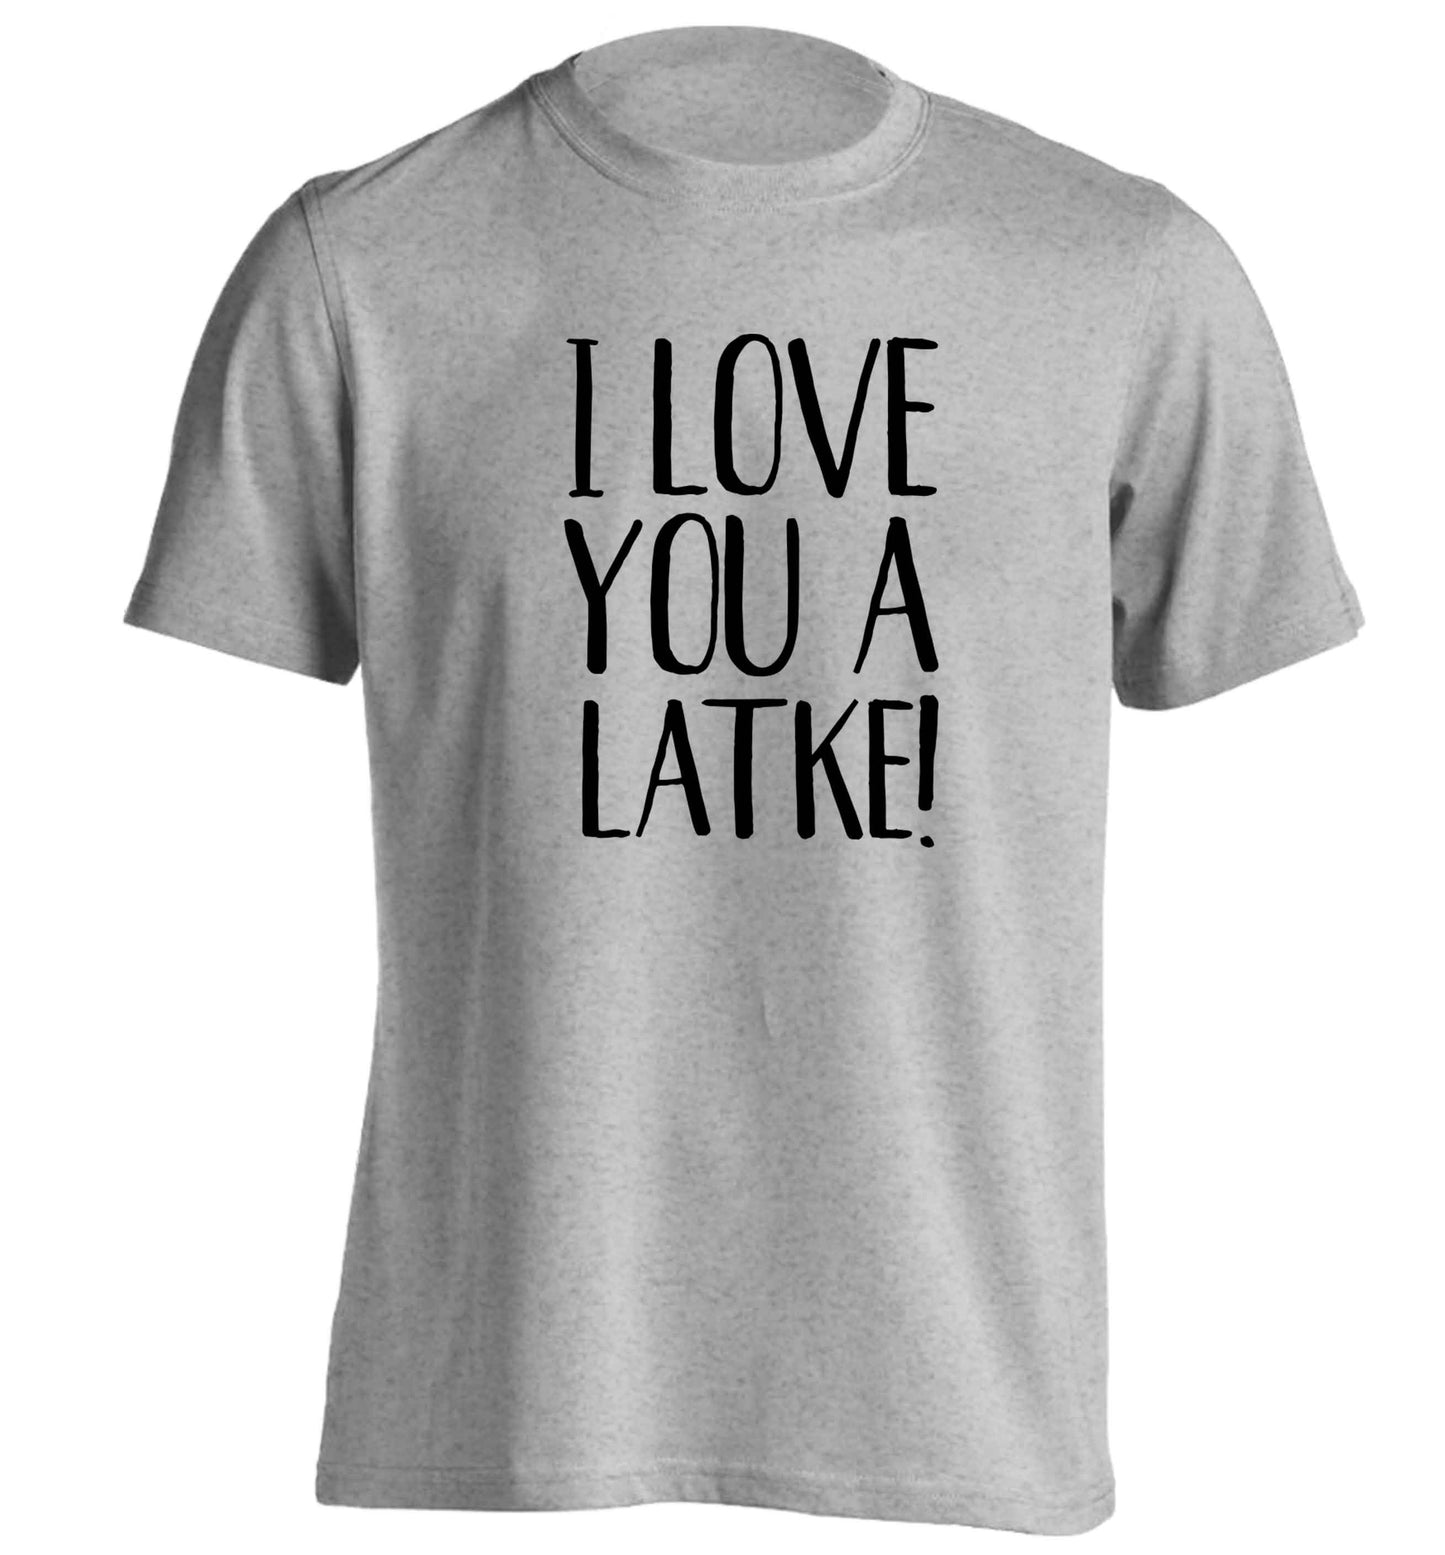 I love you a latke! adults unisex grey Tshirt 2XL